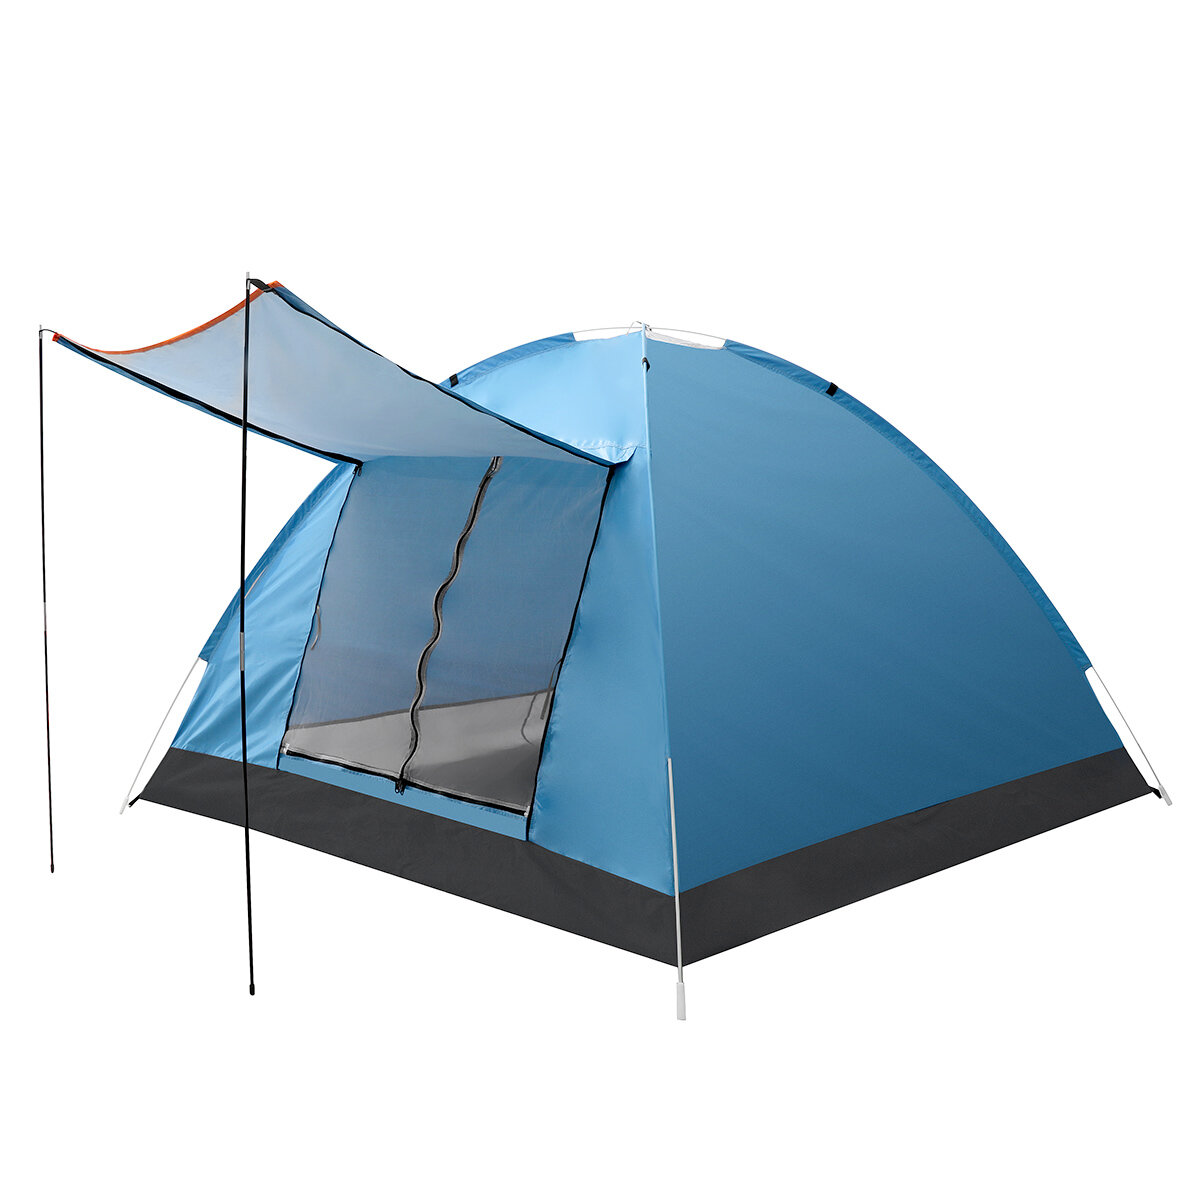 IPRee®3-4人用ダブルレイヤーキャンプテント両開きドア屋外防水日よけテント125x200x200cm釣りキャンプパーティー用